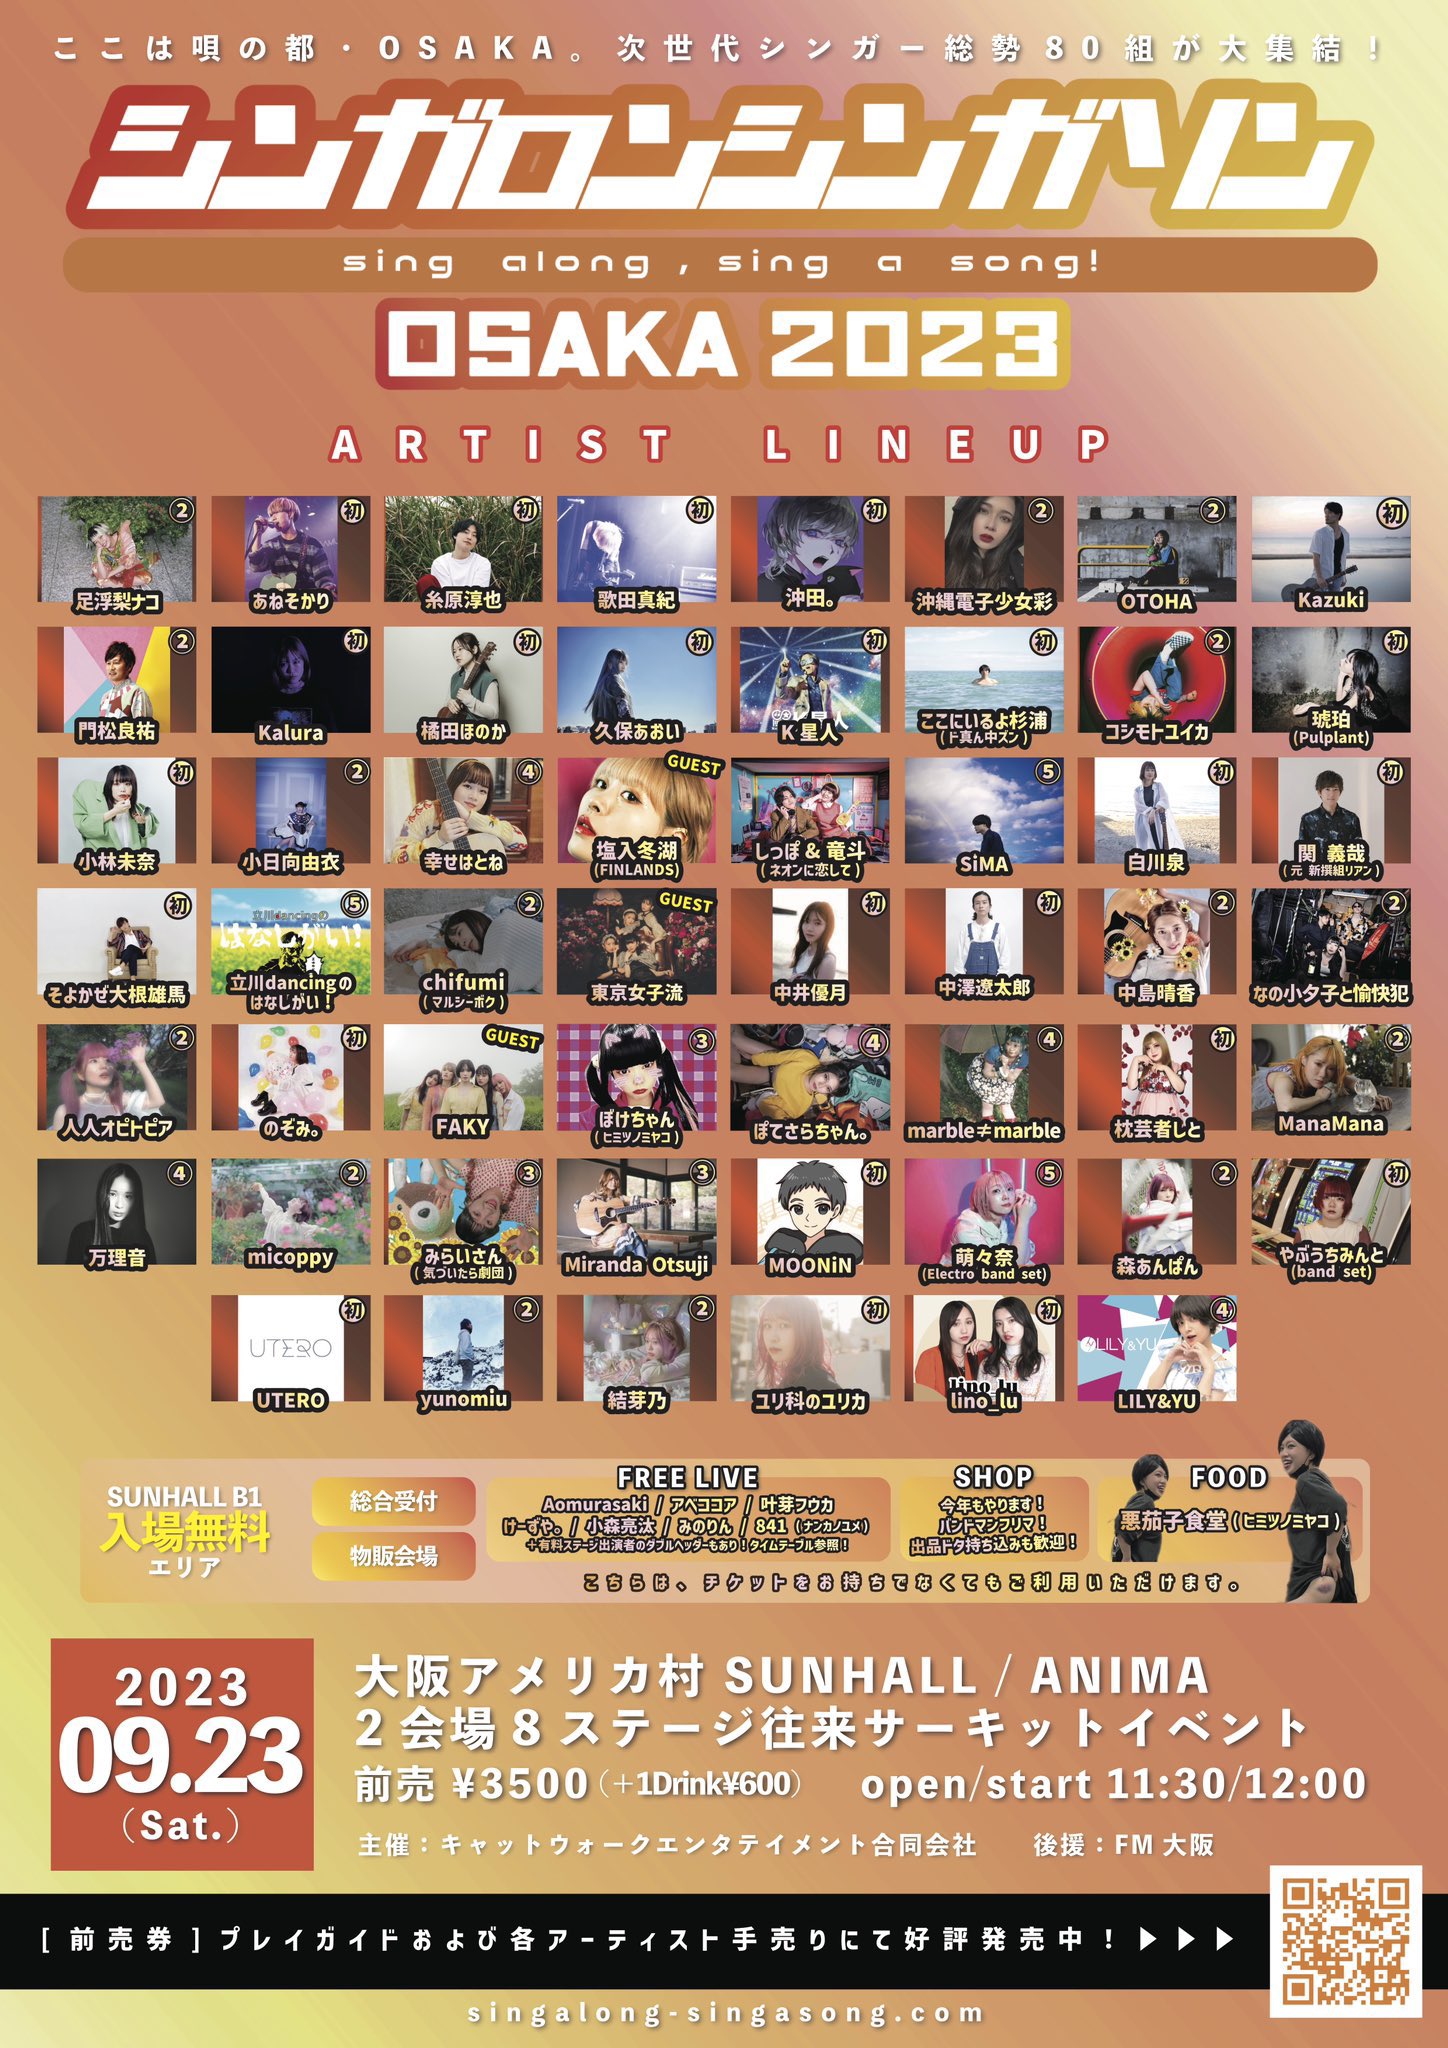 シンガロンシンガソン OSAKA 2023